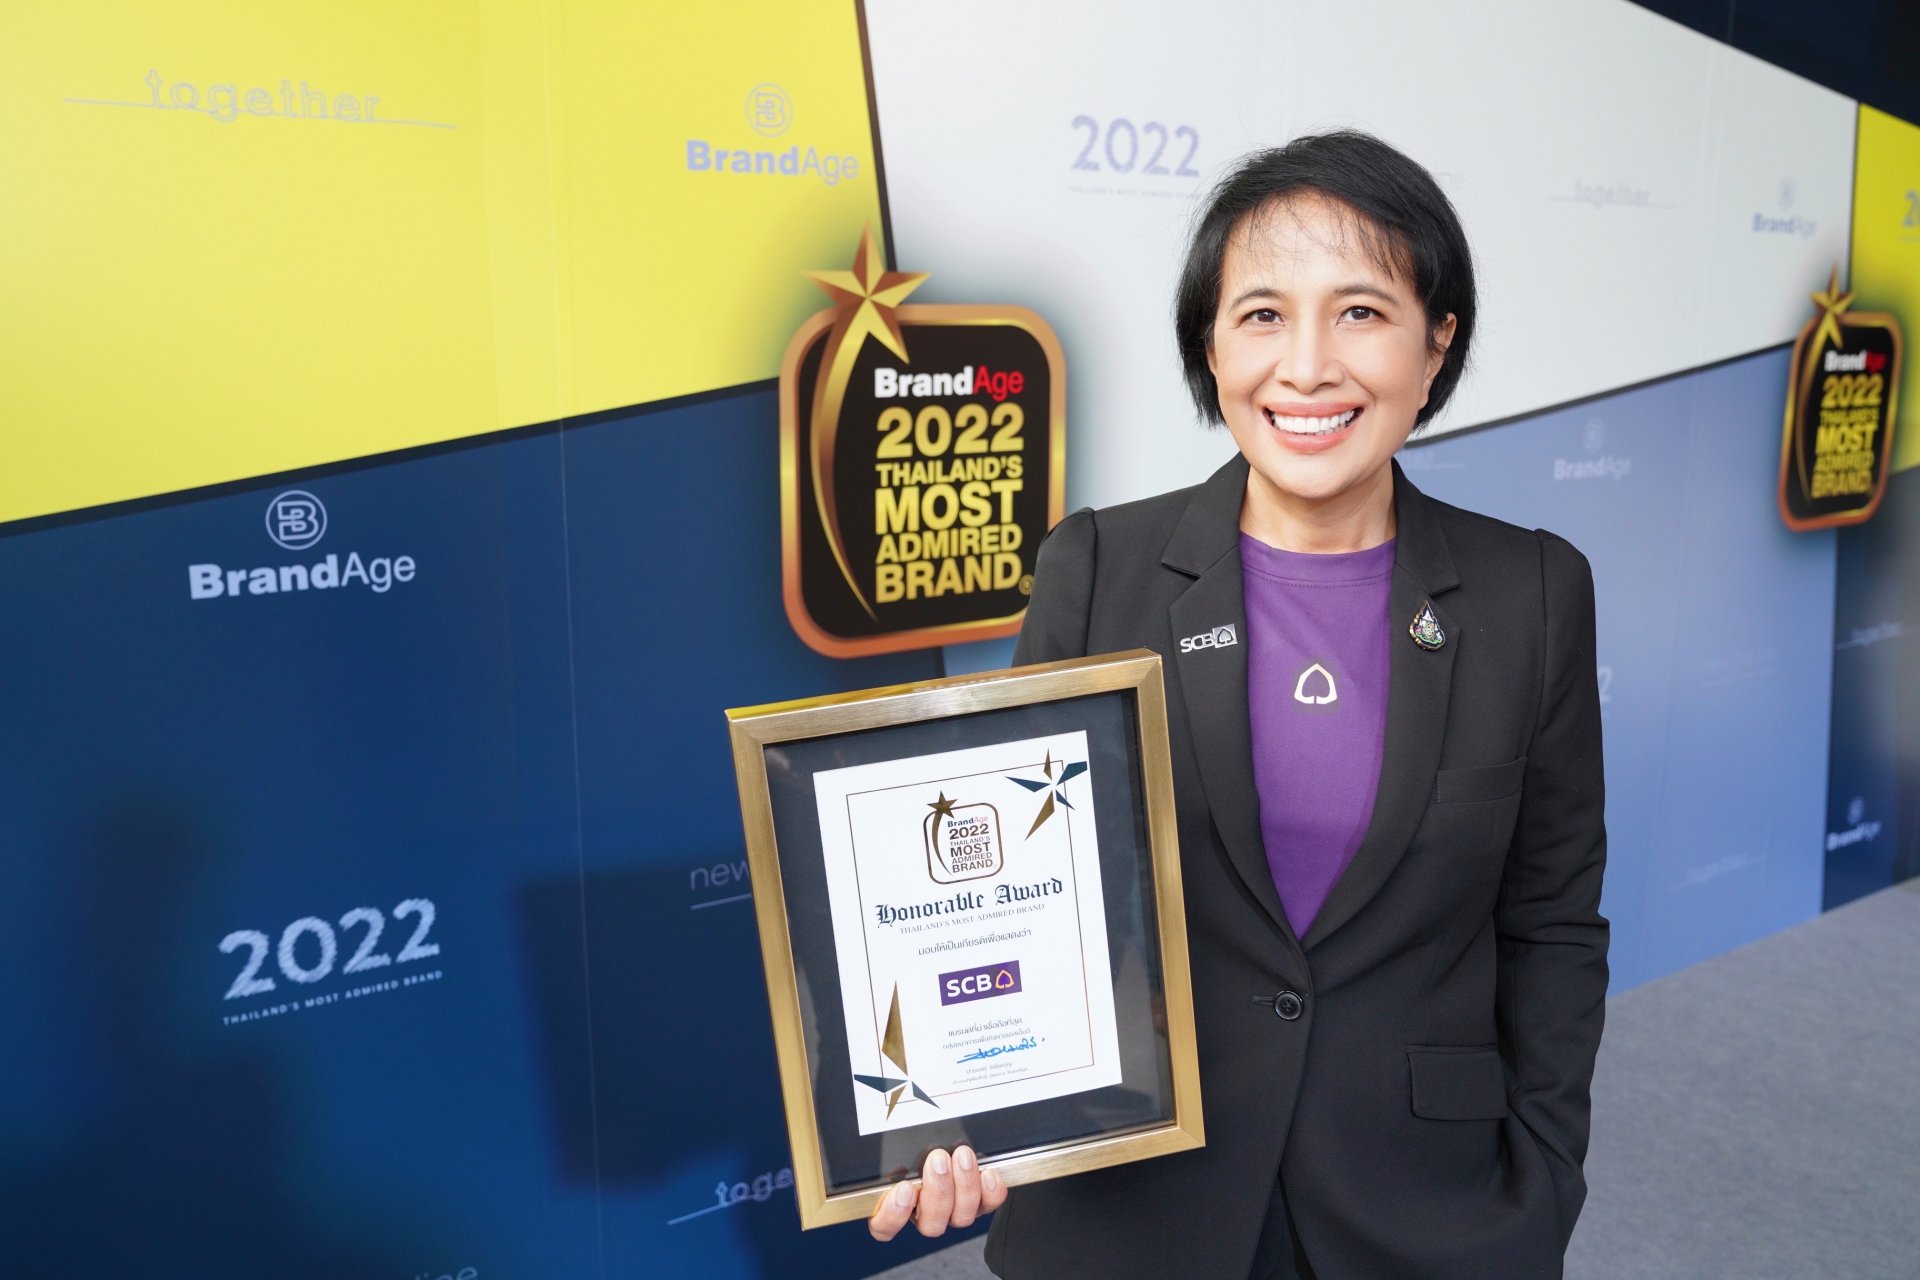 ธนาคารไทยพาณิชย์ คว้าอันดับ 1 “ธนาคารเพื่อเอสเอ็มอีที่น่าเชื่อถือที่สุด” จากผลสำรวจ 2022 Thailand’s Most Admired Brand